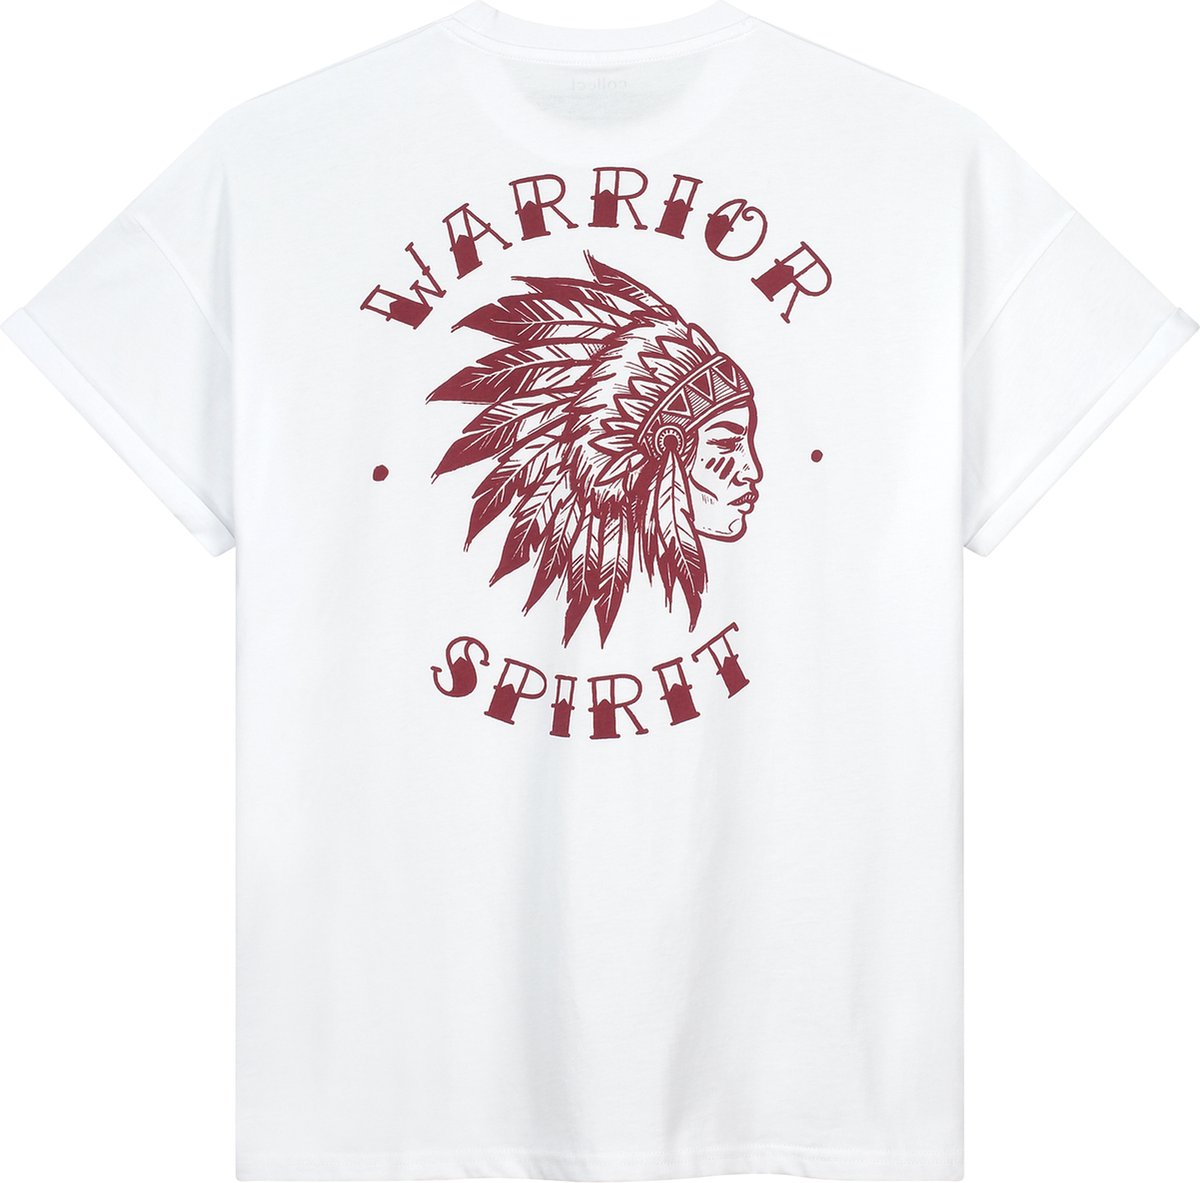 Warrior Spirit - Oversized - Wit T-shirt